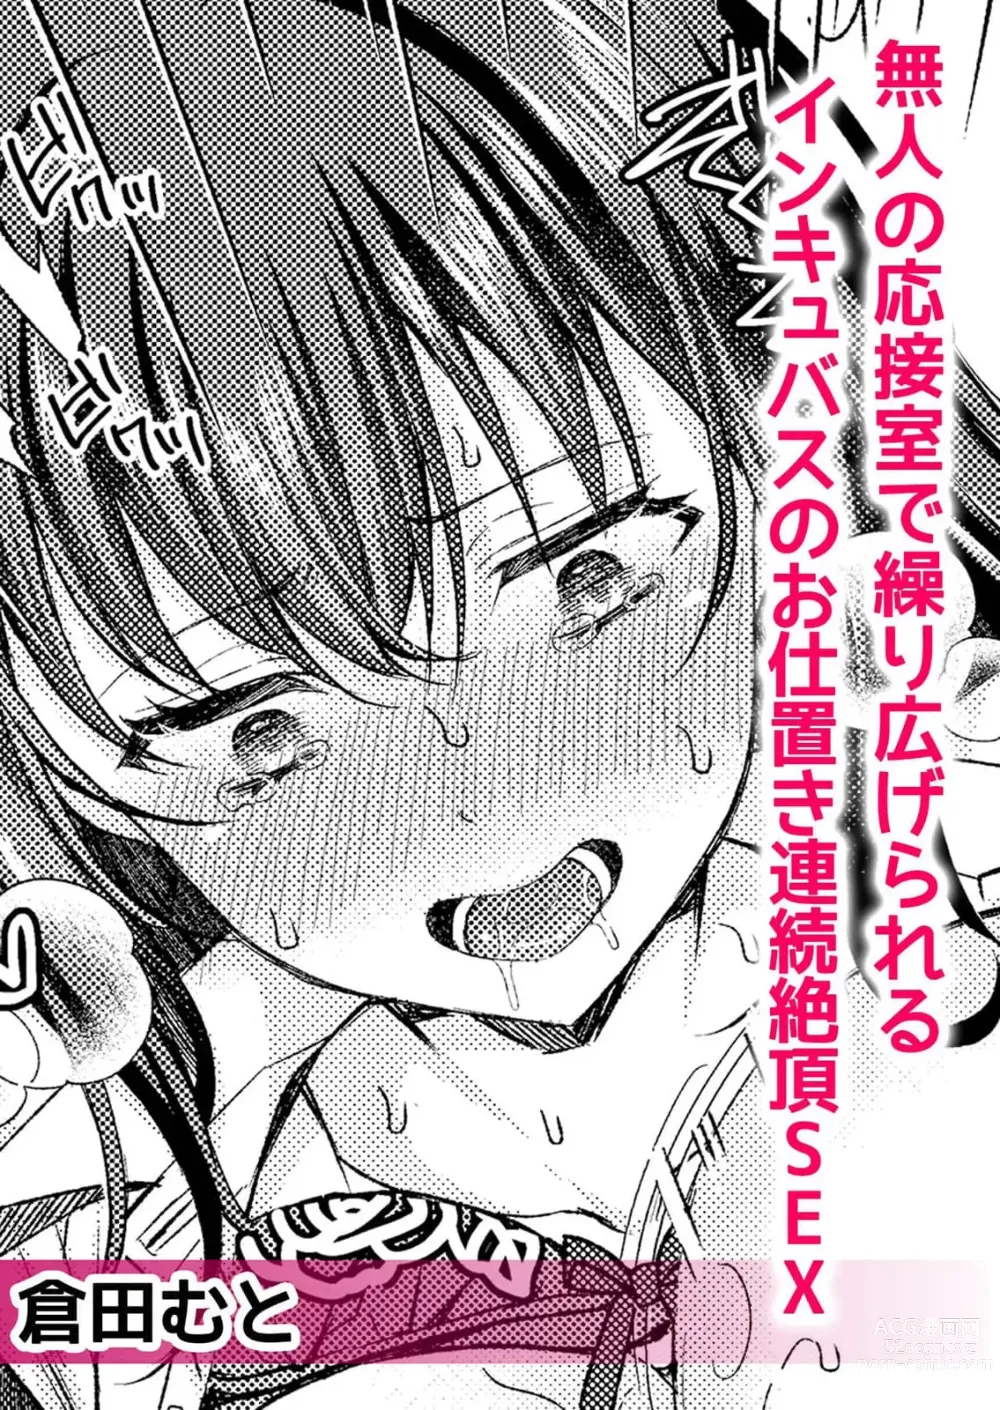 Page 2 of manga 在空无一人的接待室内被他肏开因受到淫魔的惩罚而连续高潮不止的SEX